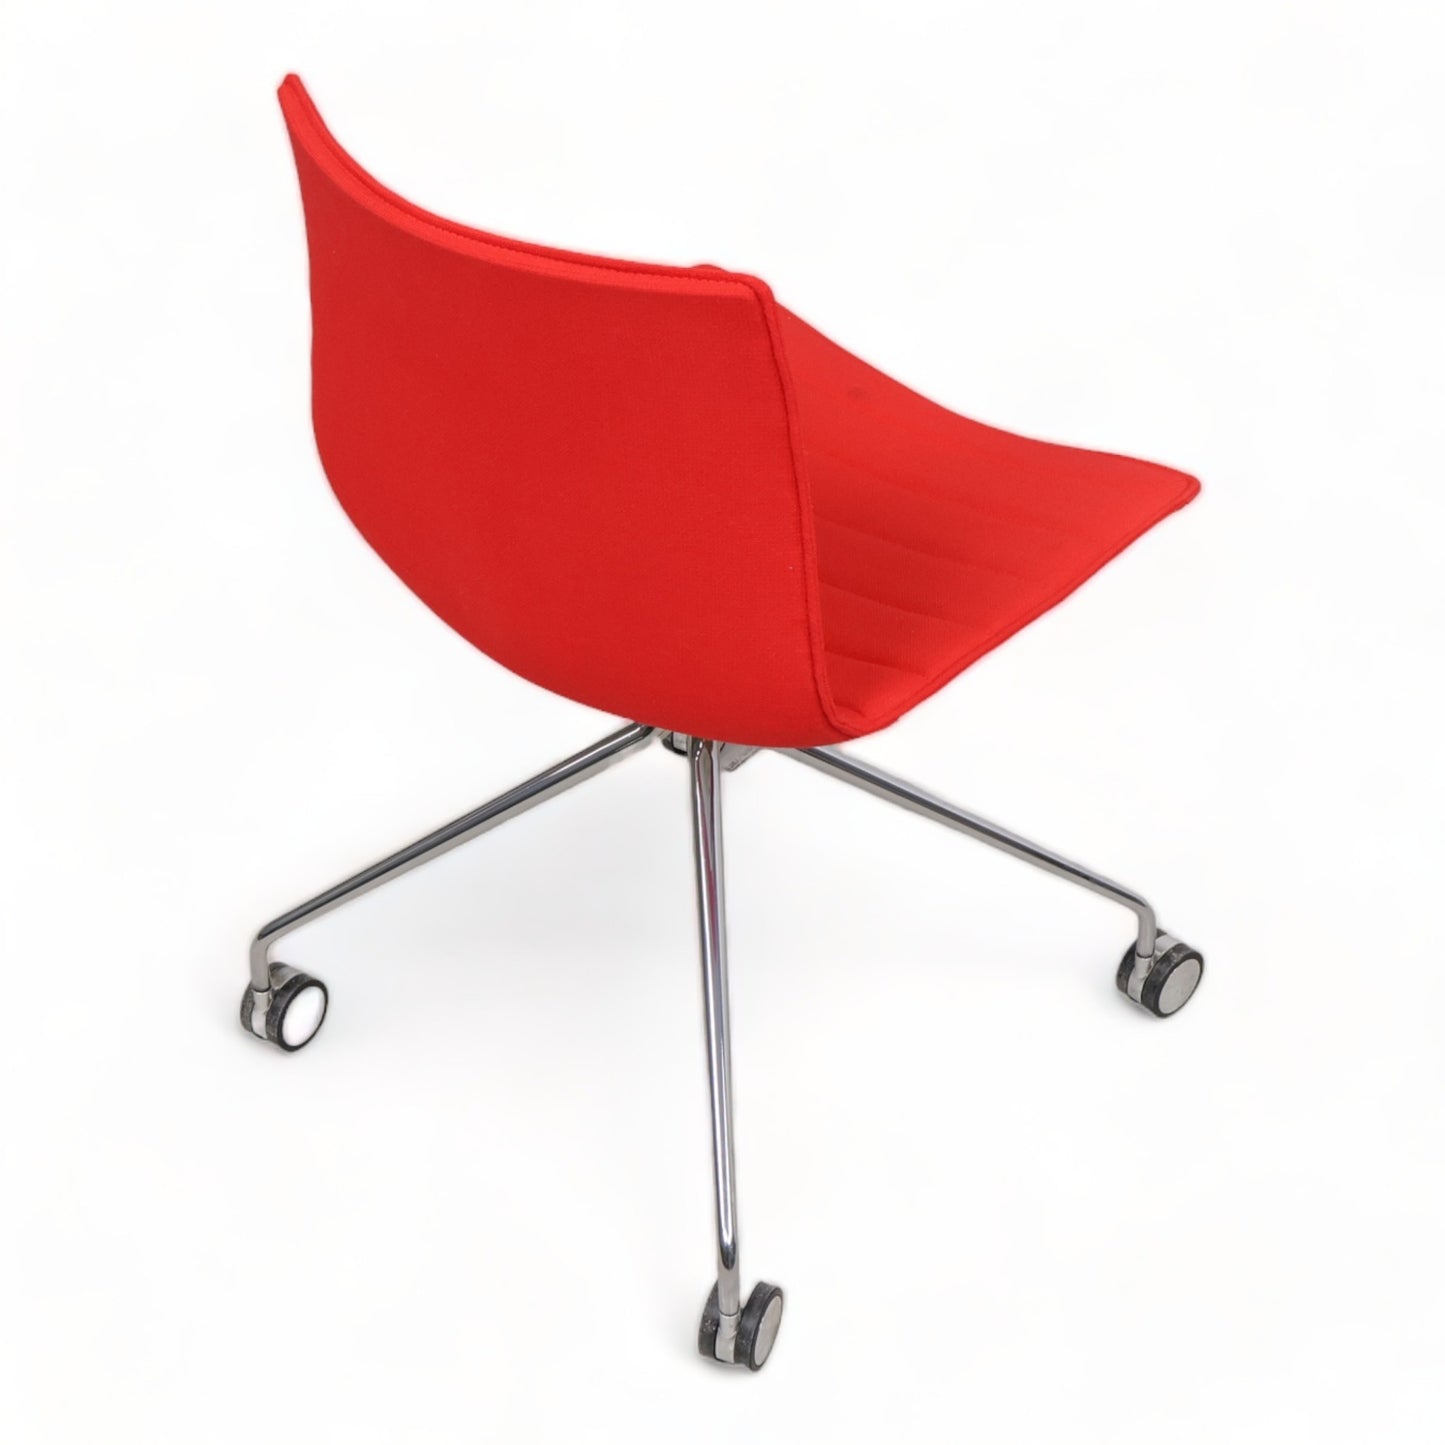 Nyrenset | Arper Catifa stol i fargen rød